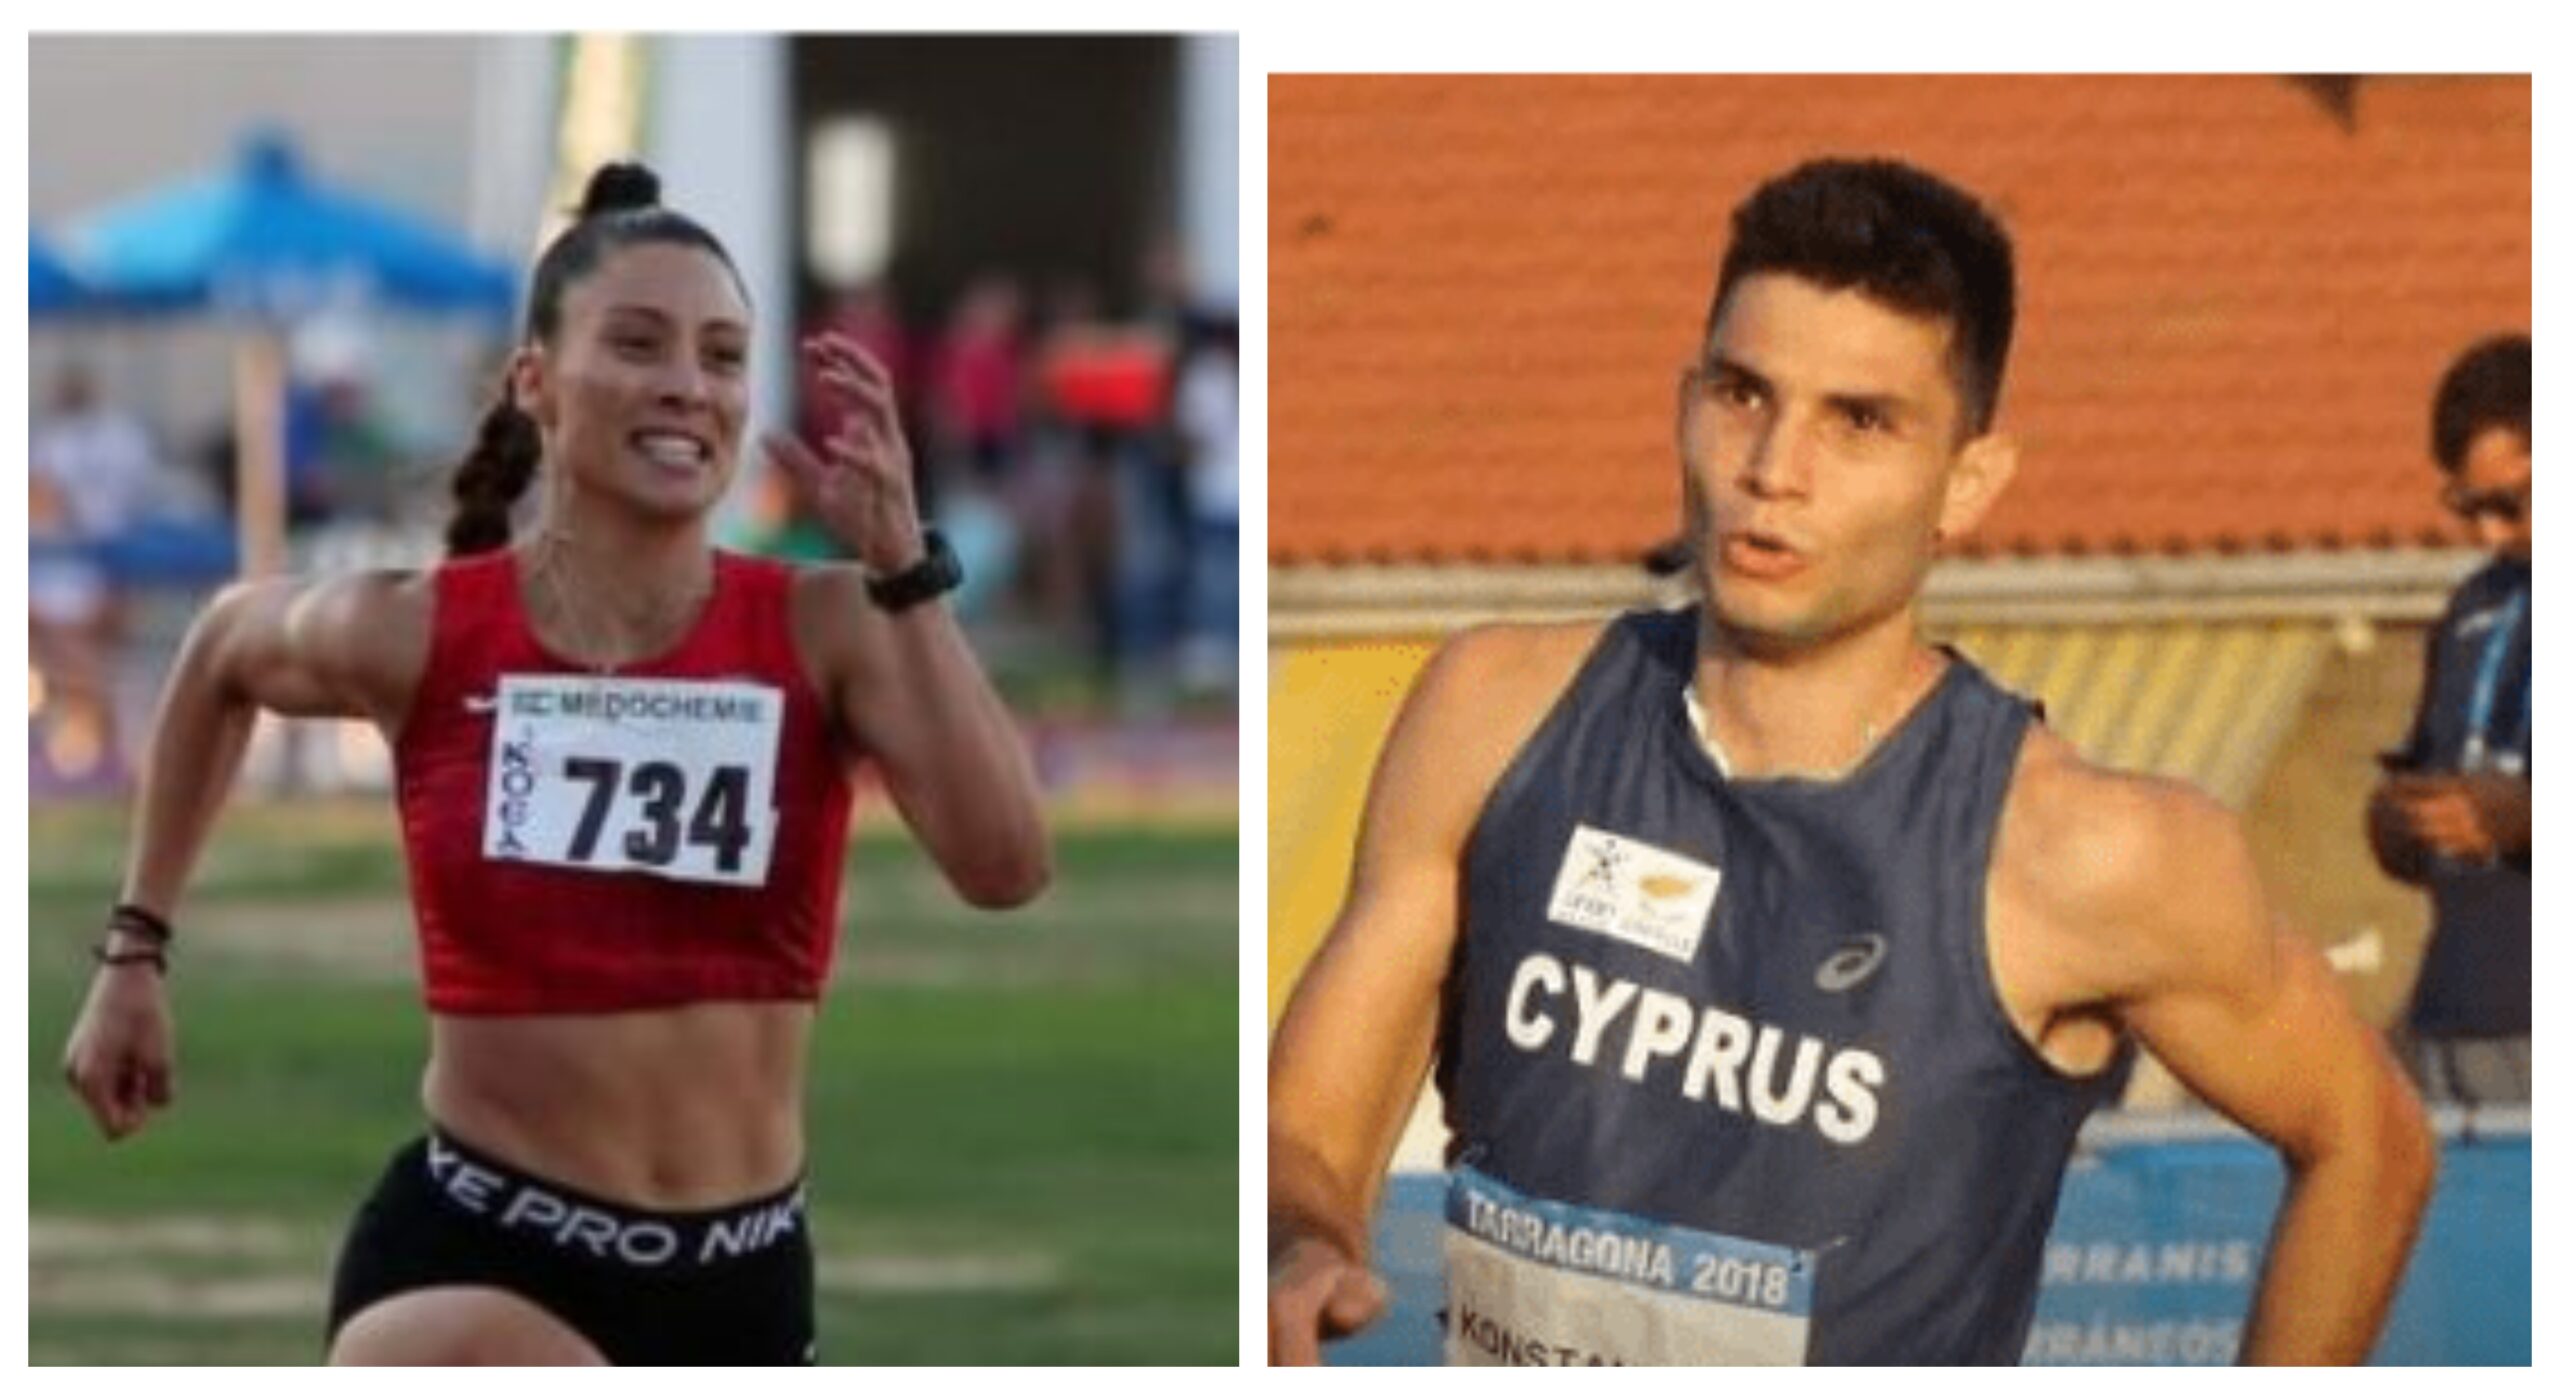 Δύο ΠΑΦΙΤΕΣ αθλητές του ΓΣ Κόροιβος στους Βαλκανικούς στην Κωνσταντινούπολη!